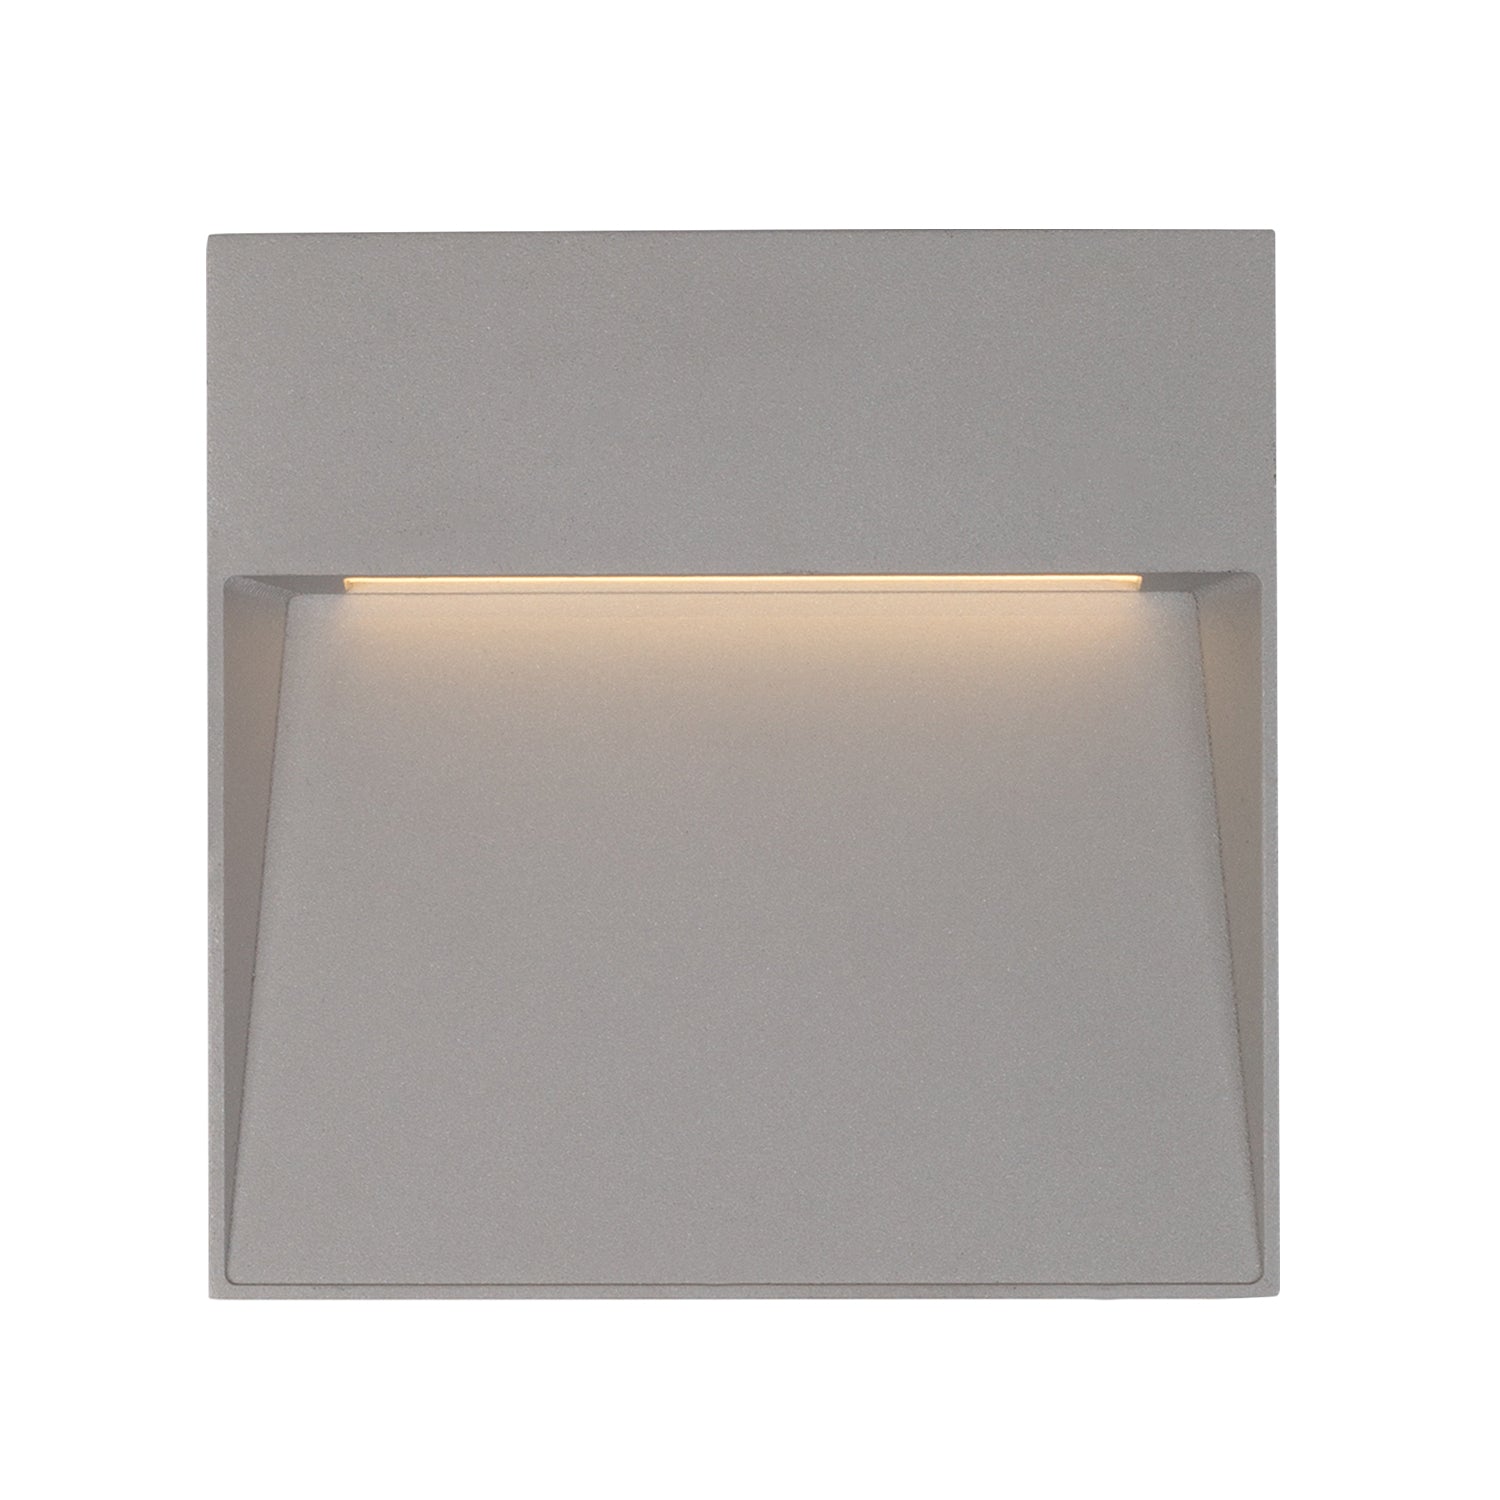 Kuzco Lighting - EW71311-GY - LED Wall Sconce - Casa - Gray